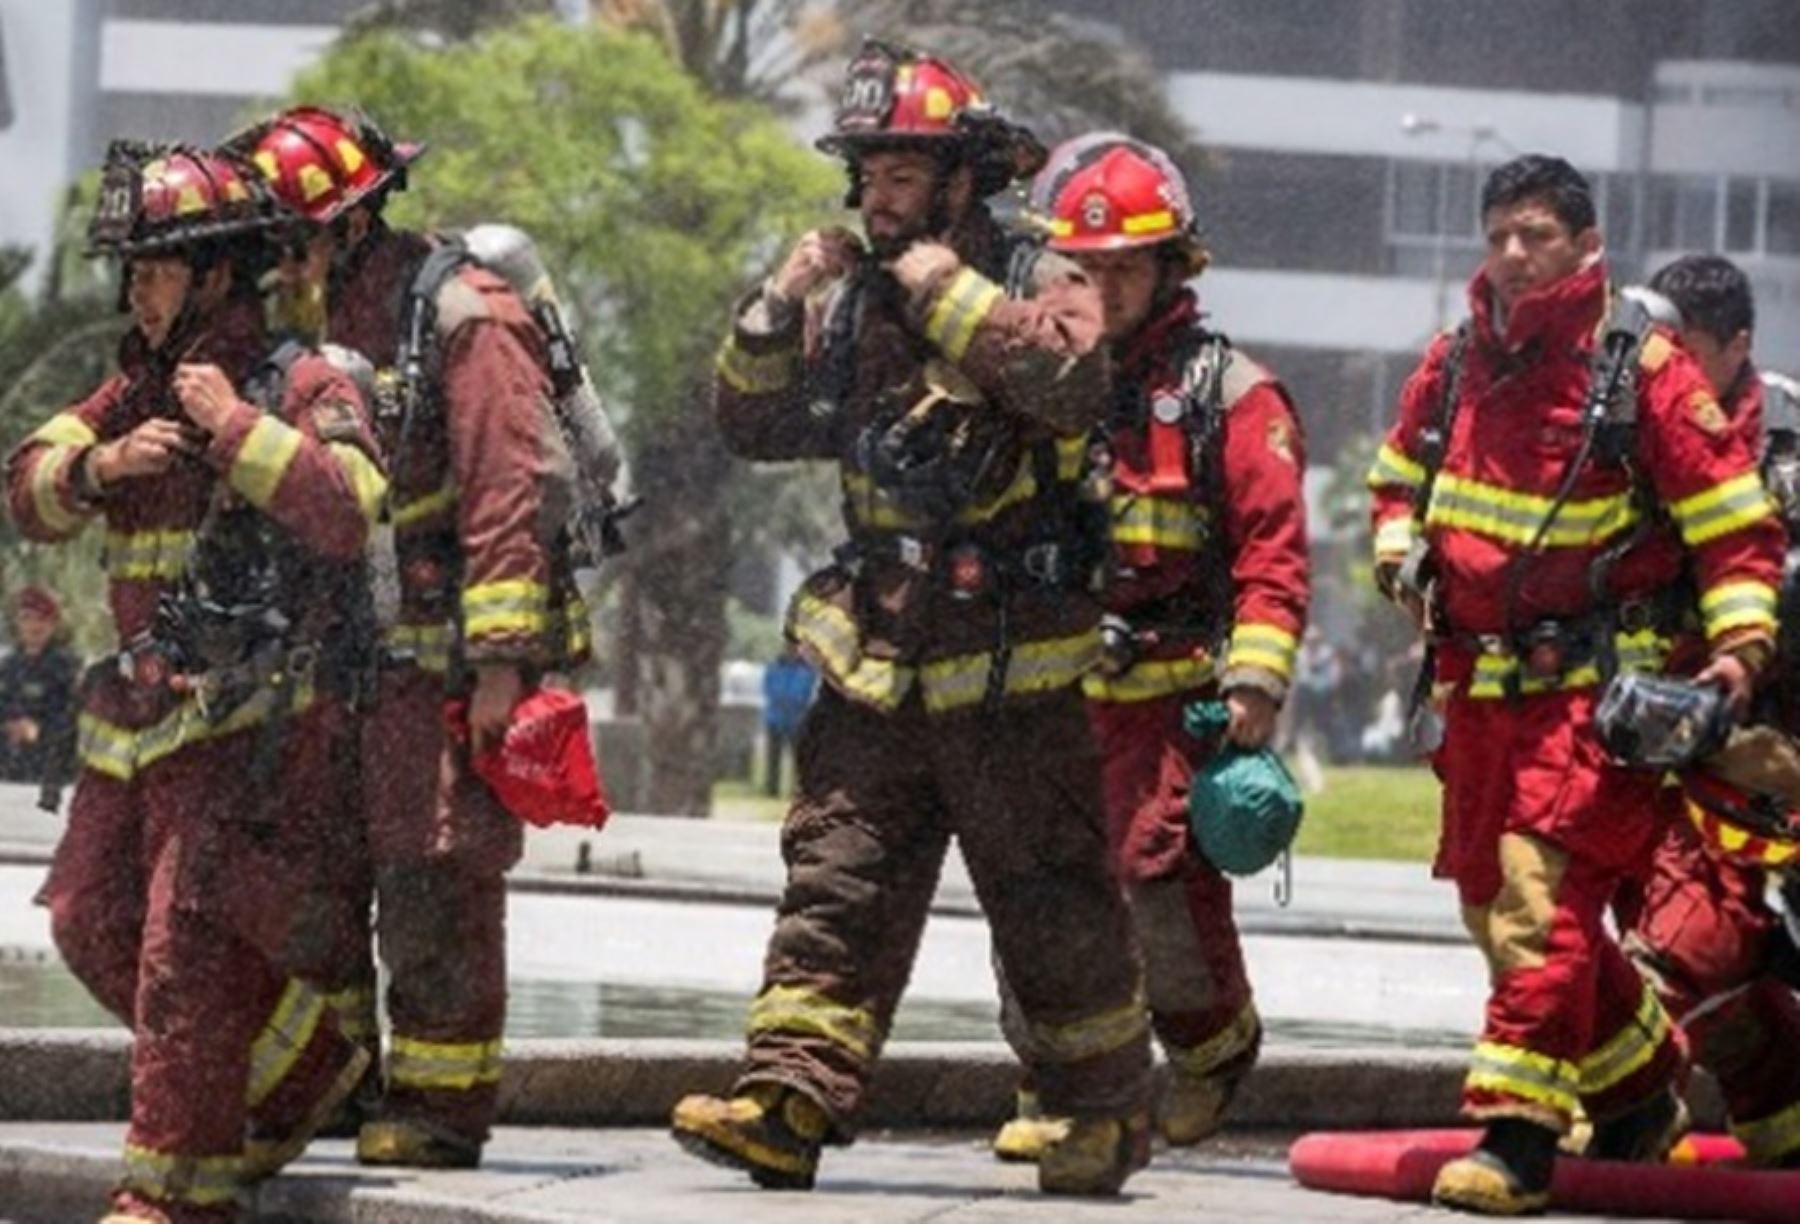 Más de 16,000 bomberos de 247 compañías en el país permanecen alertas ante cualquier emergencia que se presente en cualquier parte del territorio nacional durante la Semana Santa